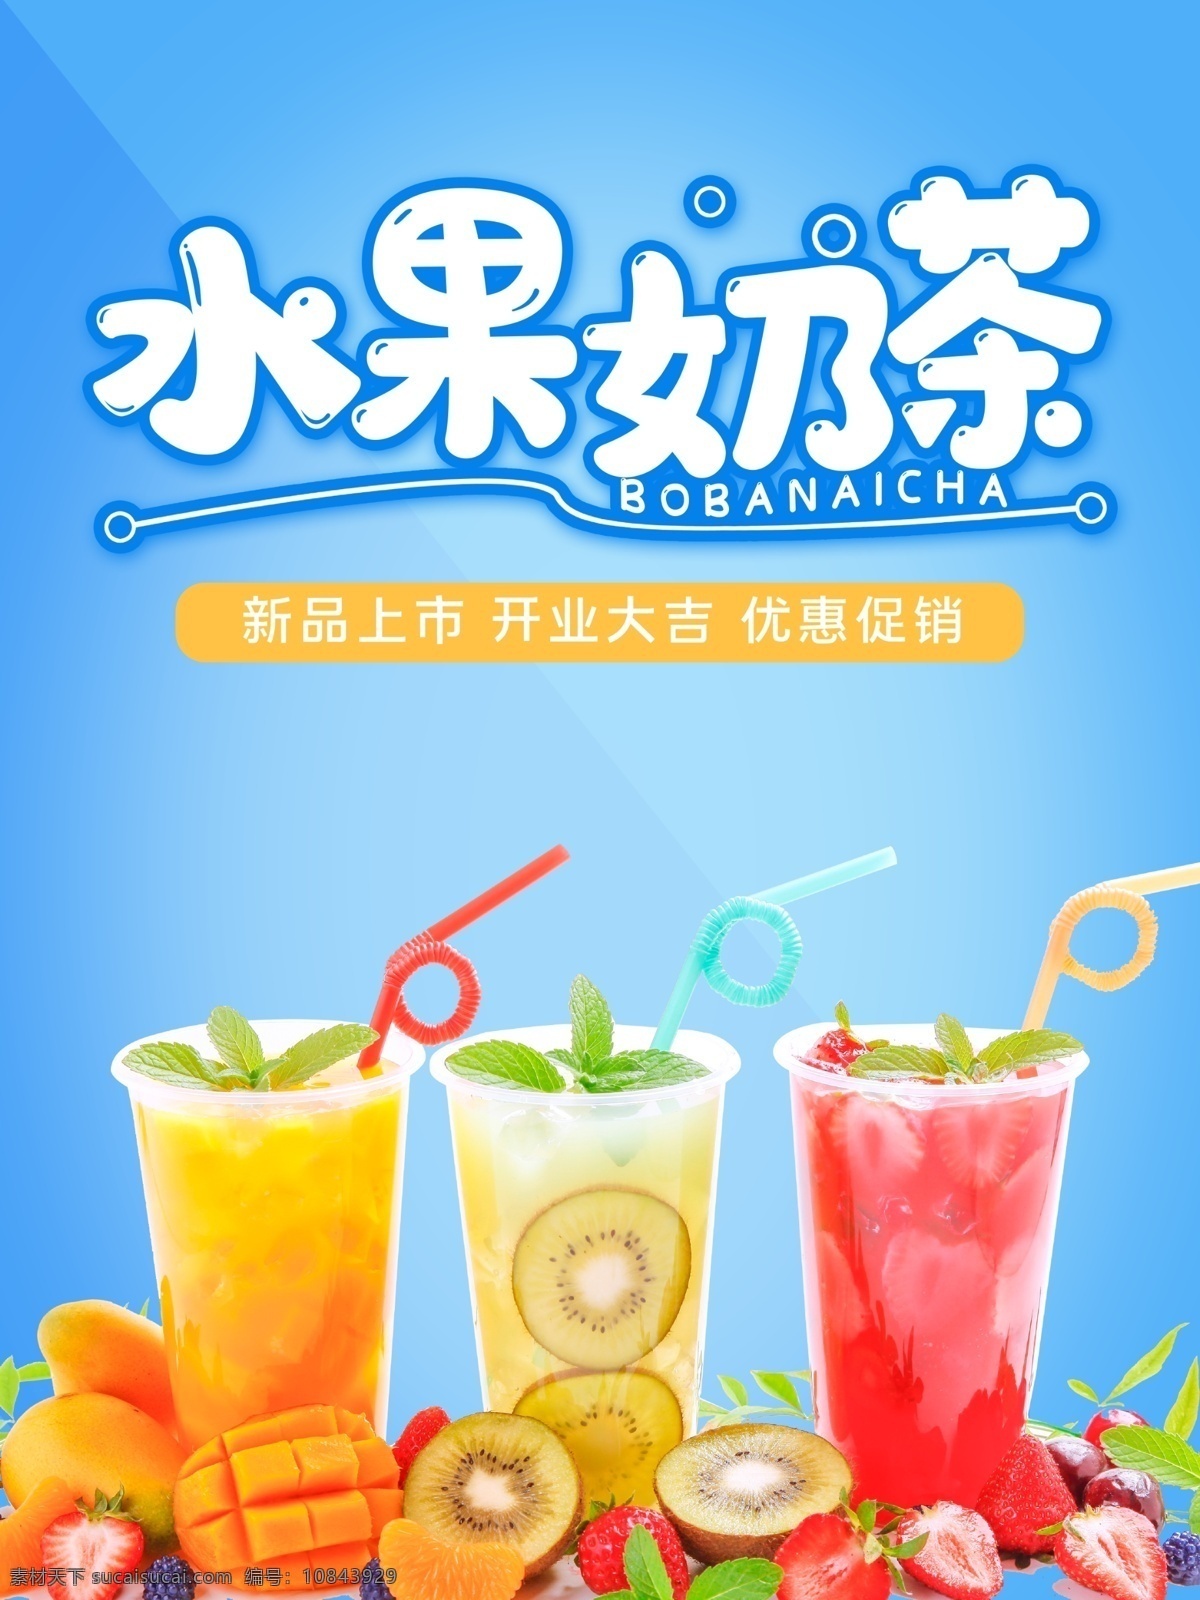 果饮海报 果汁 饮品店 饮料缤纷果饮 新品上市 新鲜 榨果汁 宣传海报